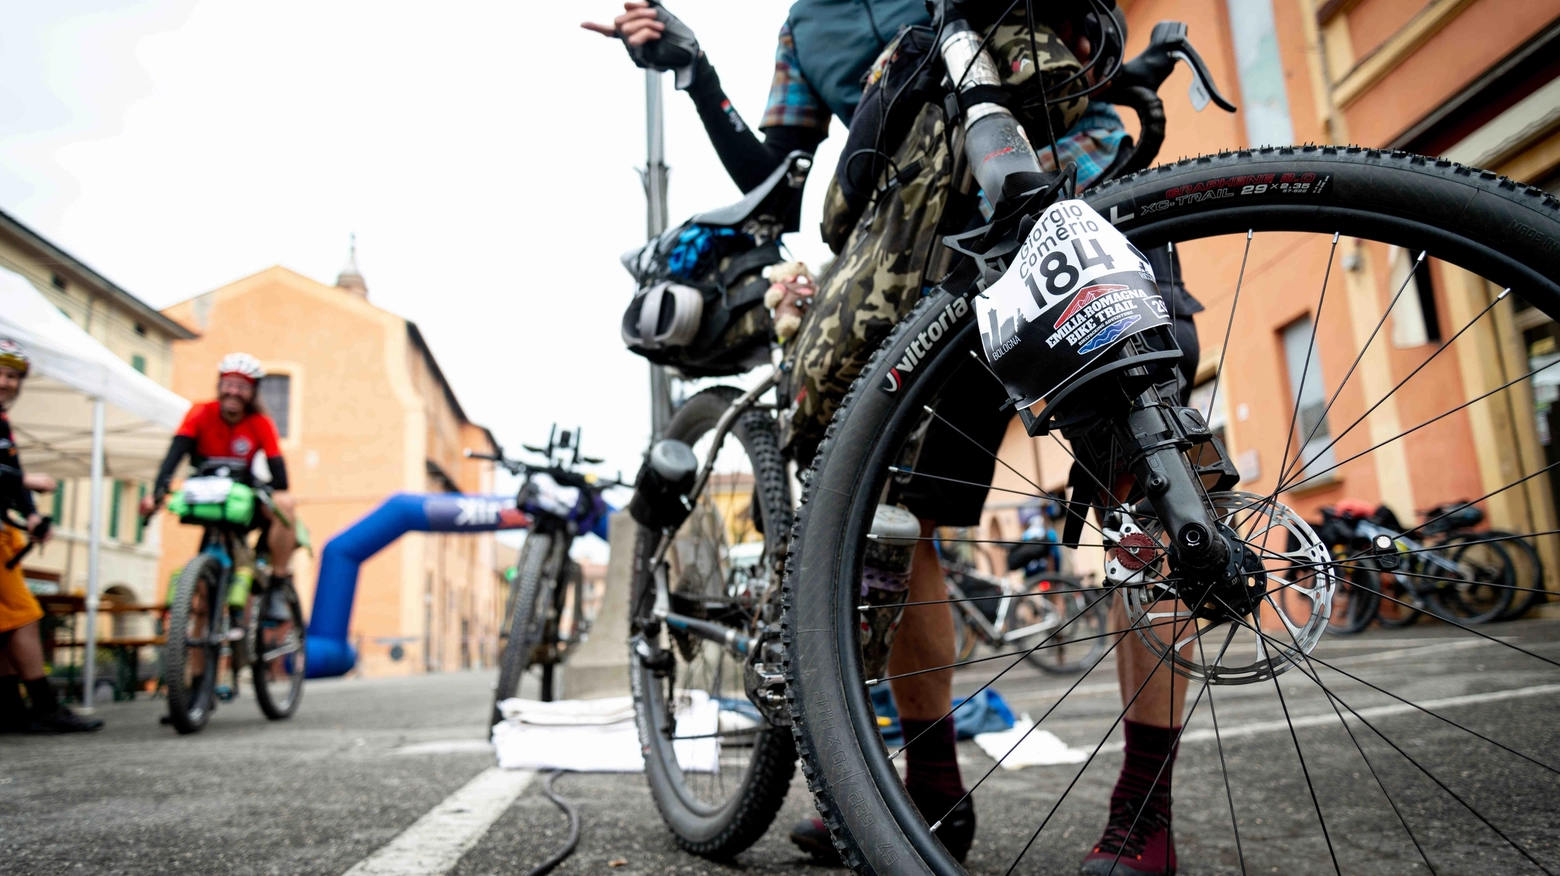 Parte dal capoluogo emiliano la nuova edizione del grande evento di bikepacking, che permette ai partecipanti di scegliere tra quattro percorsi differenti. L’avvio è previsto per giovedì 25 aprile